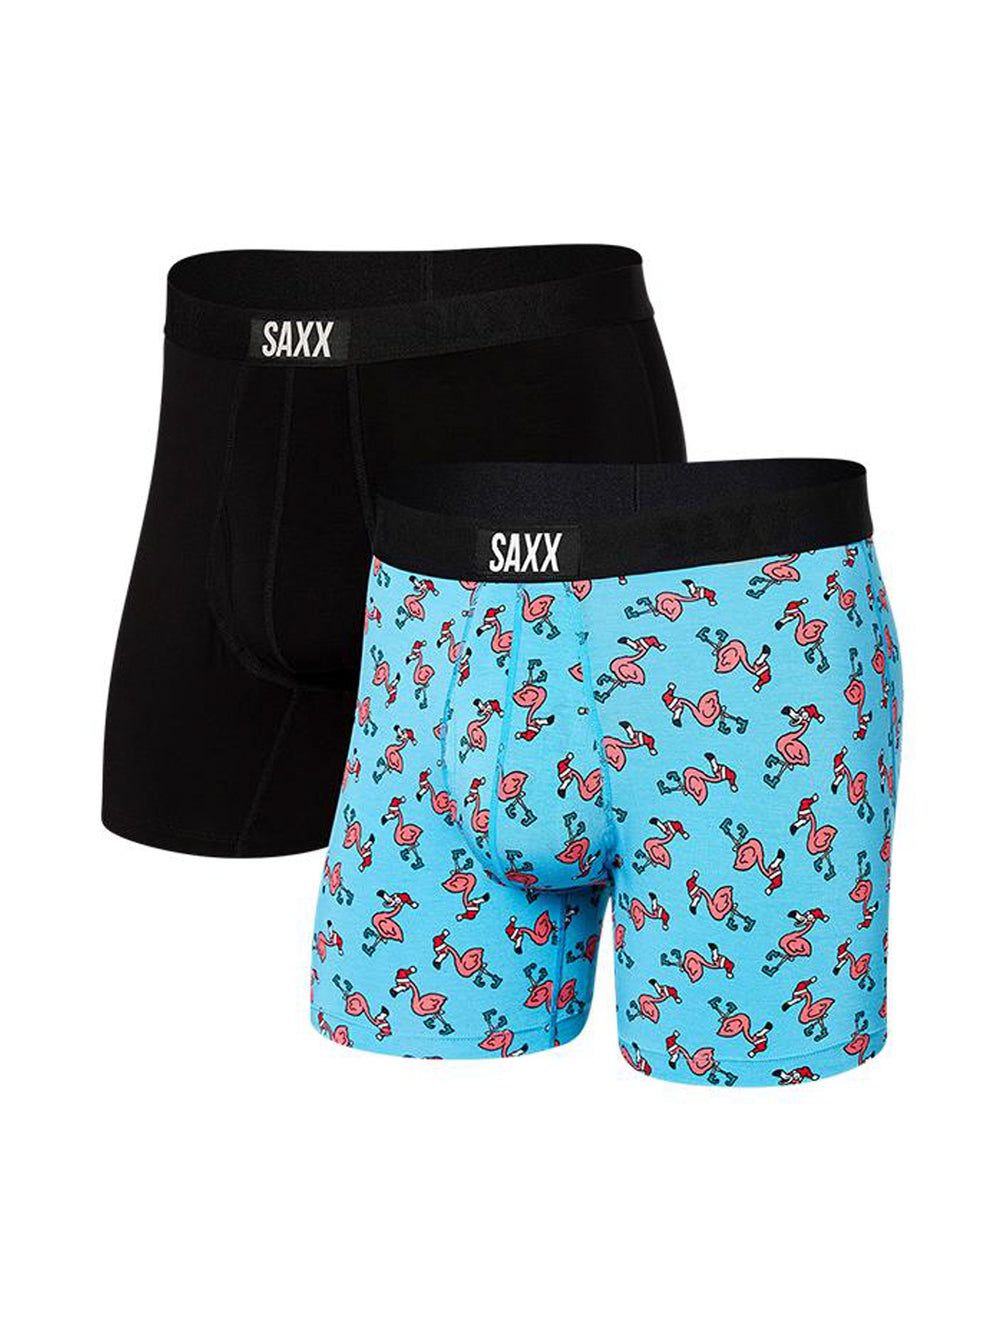 Saxx Ultra Super Soft Boxer Brief - I Heart Cowboys - Size X-Small